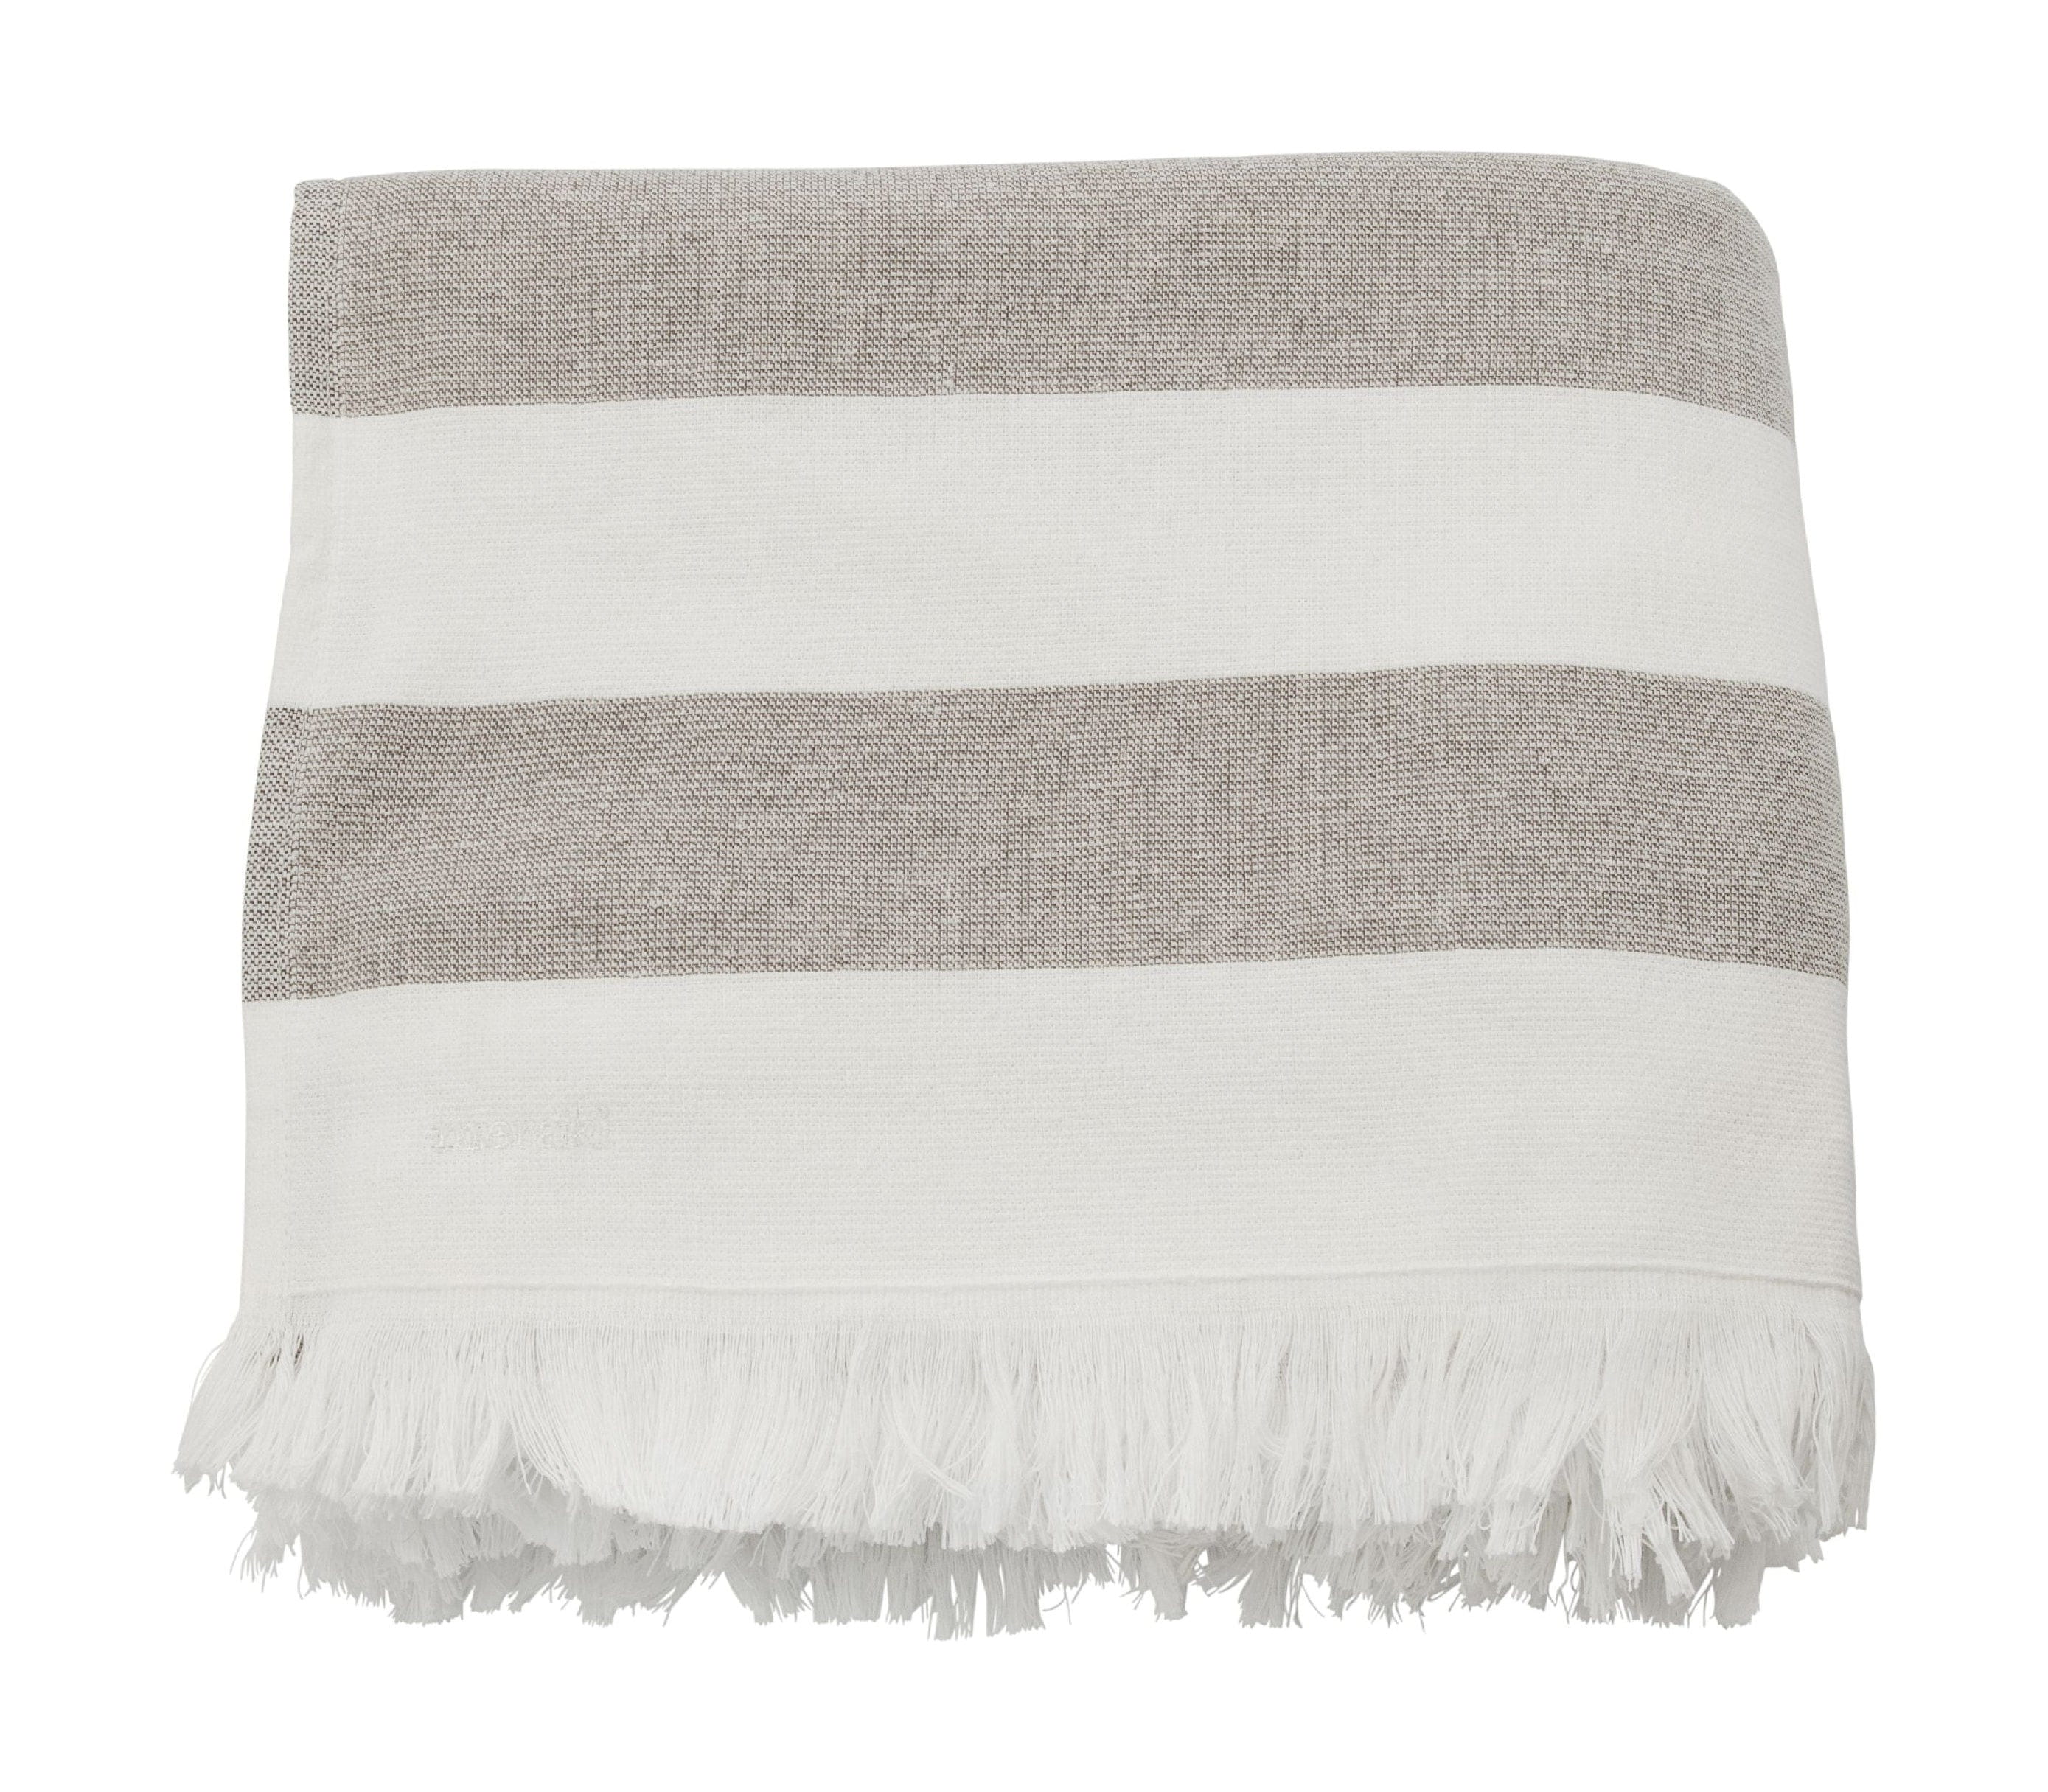 Meraki Barbarum handdoek 100x180 cm, witte en bruine strepen